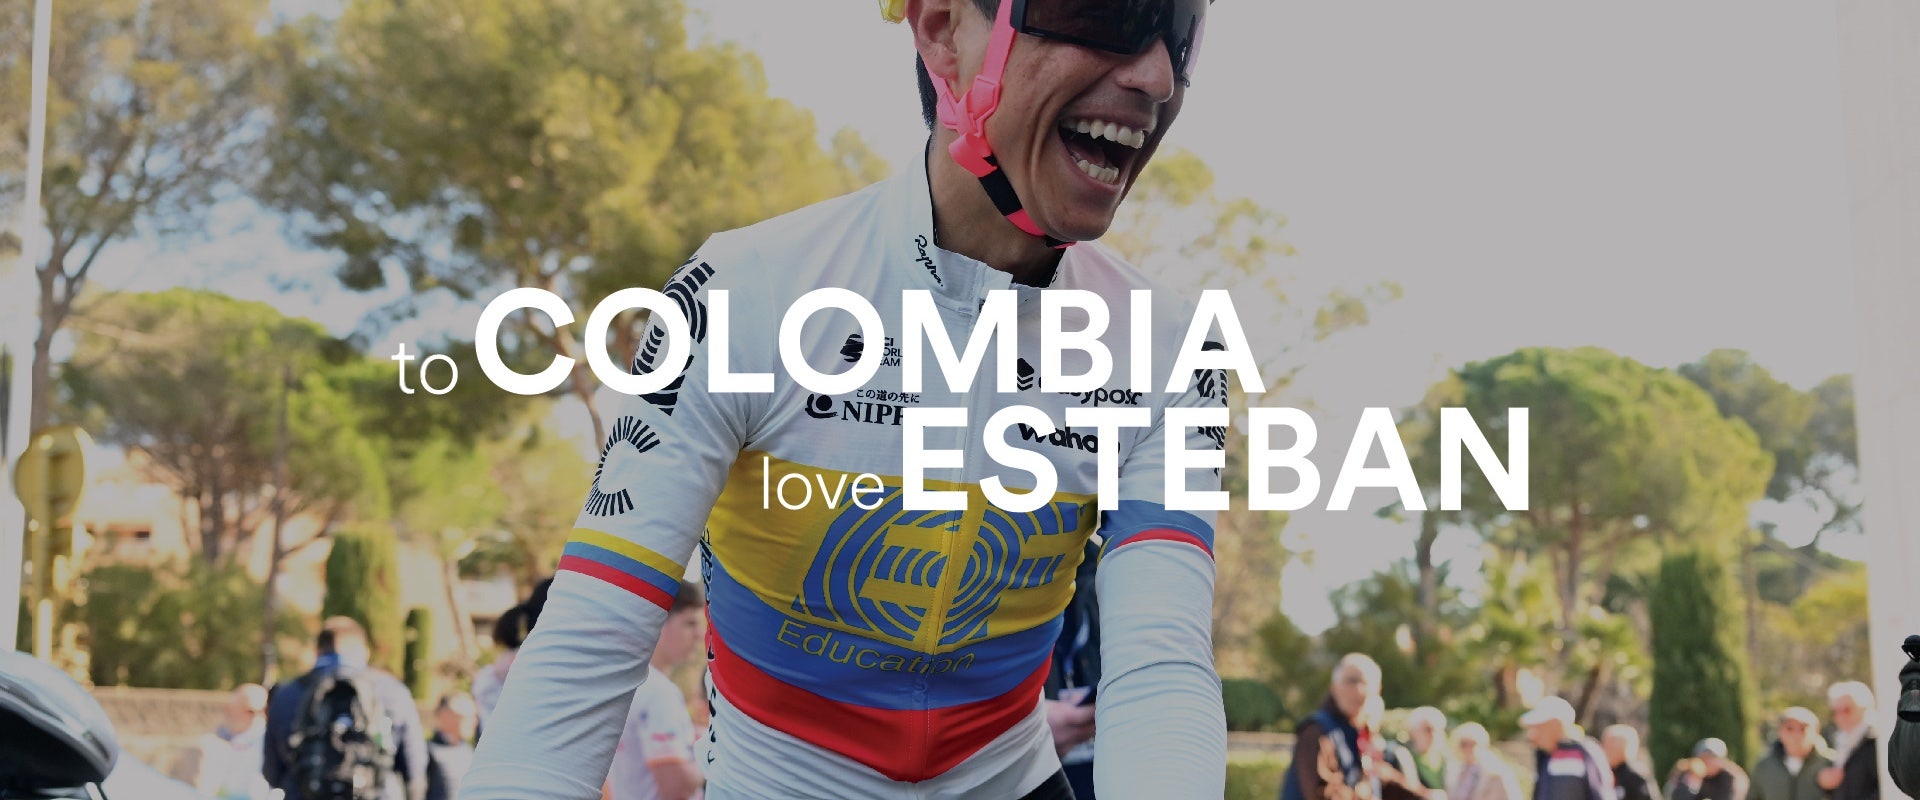 To Colombia, Love Esteban